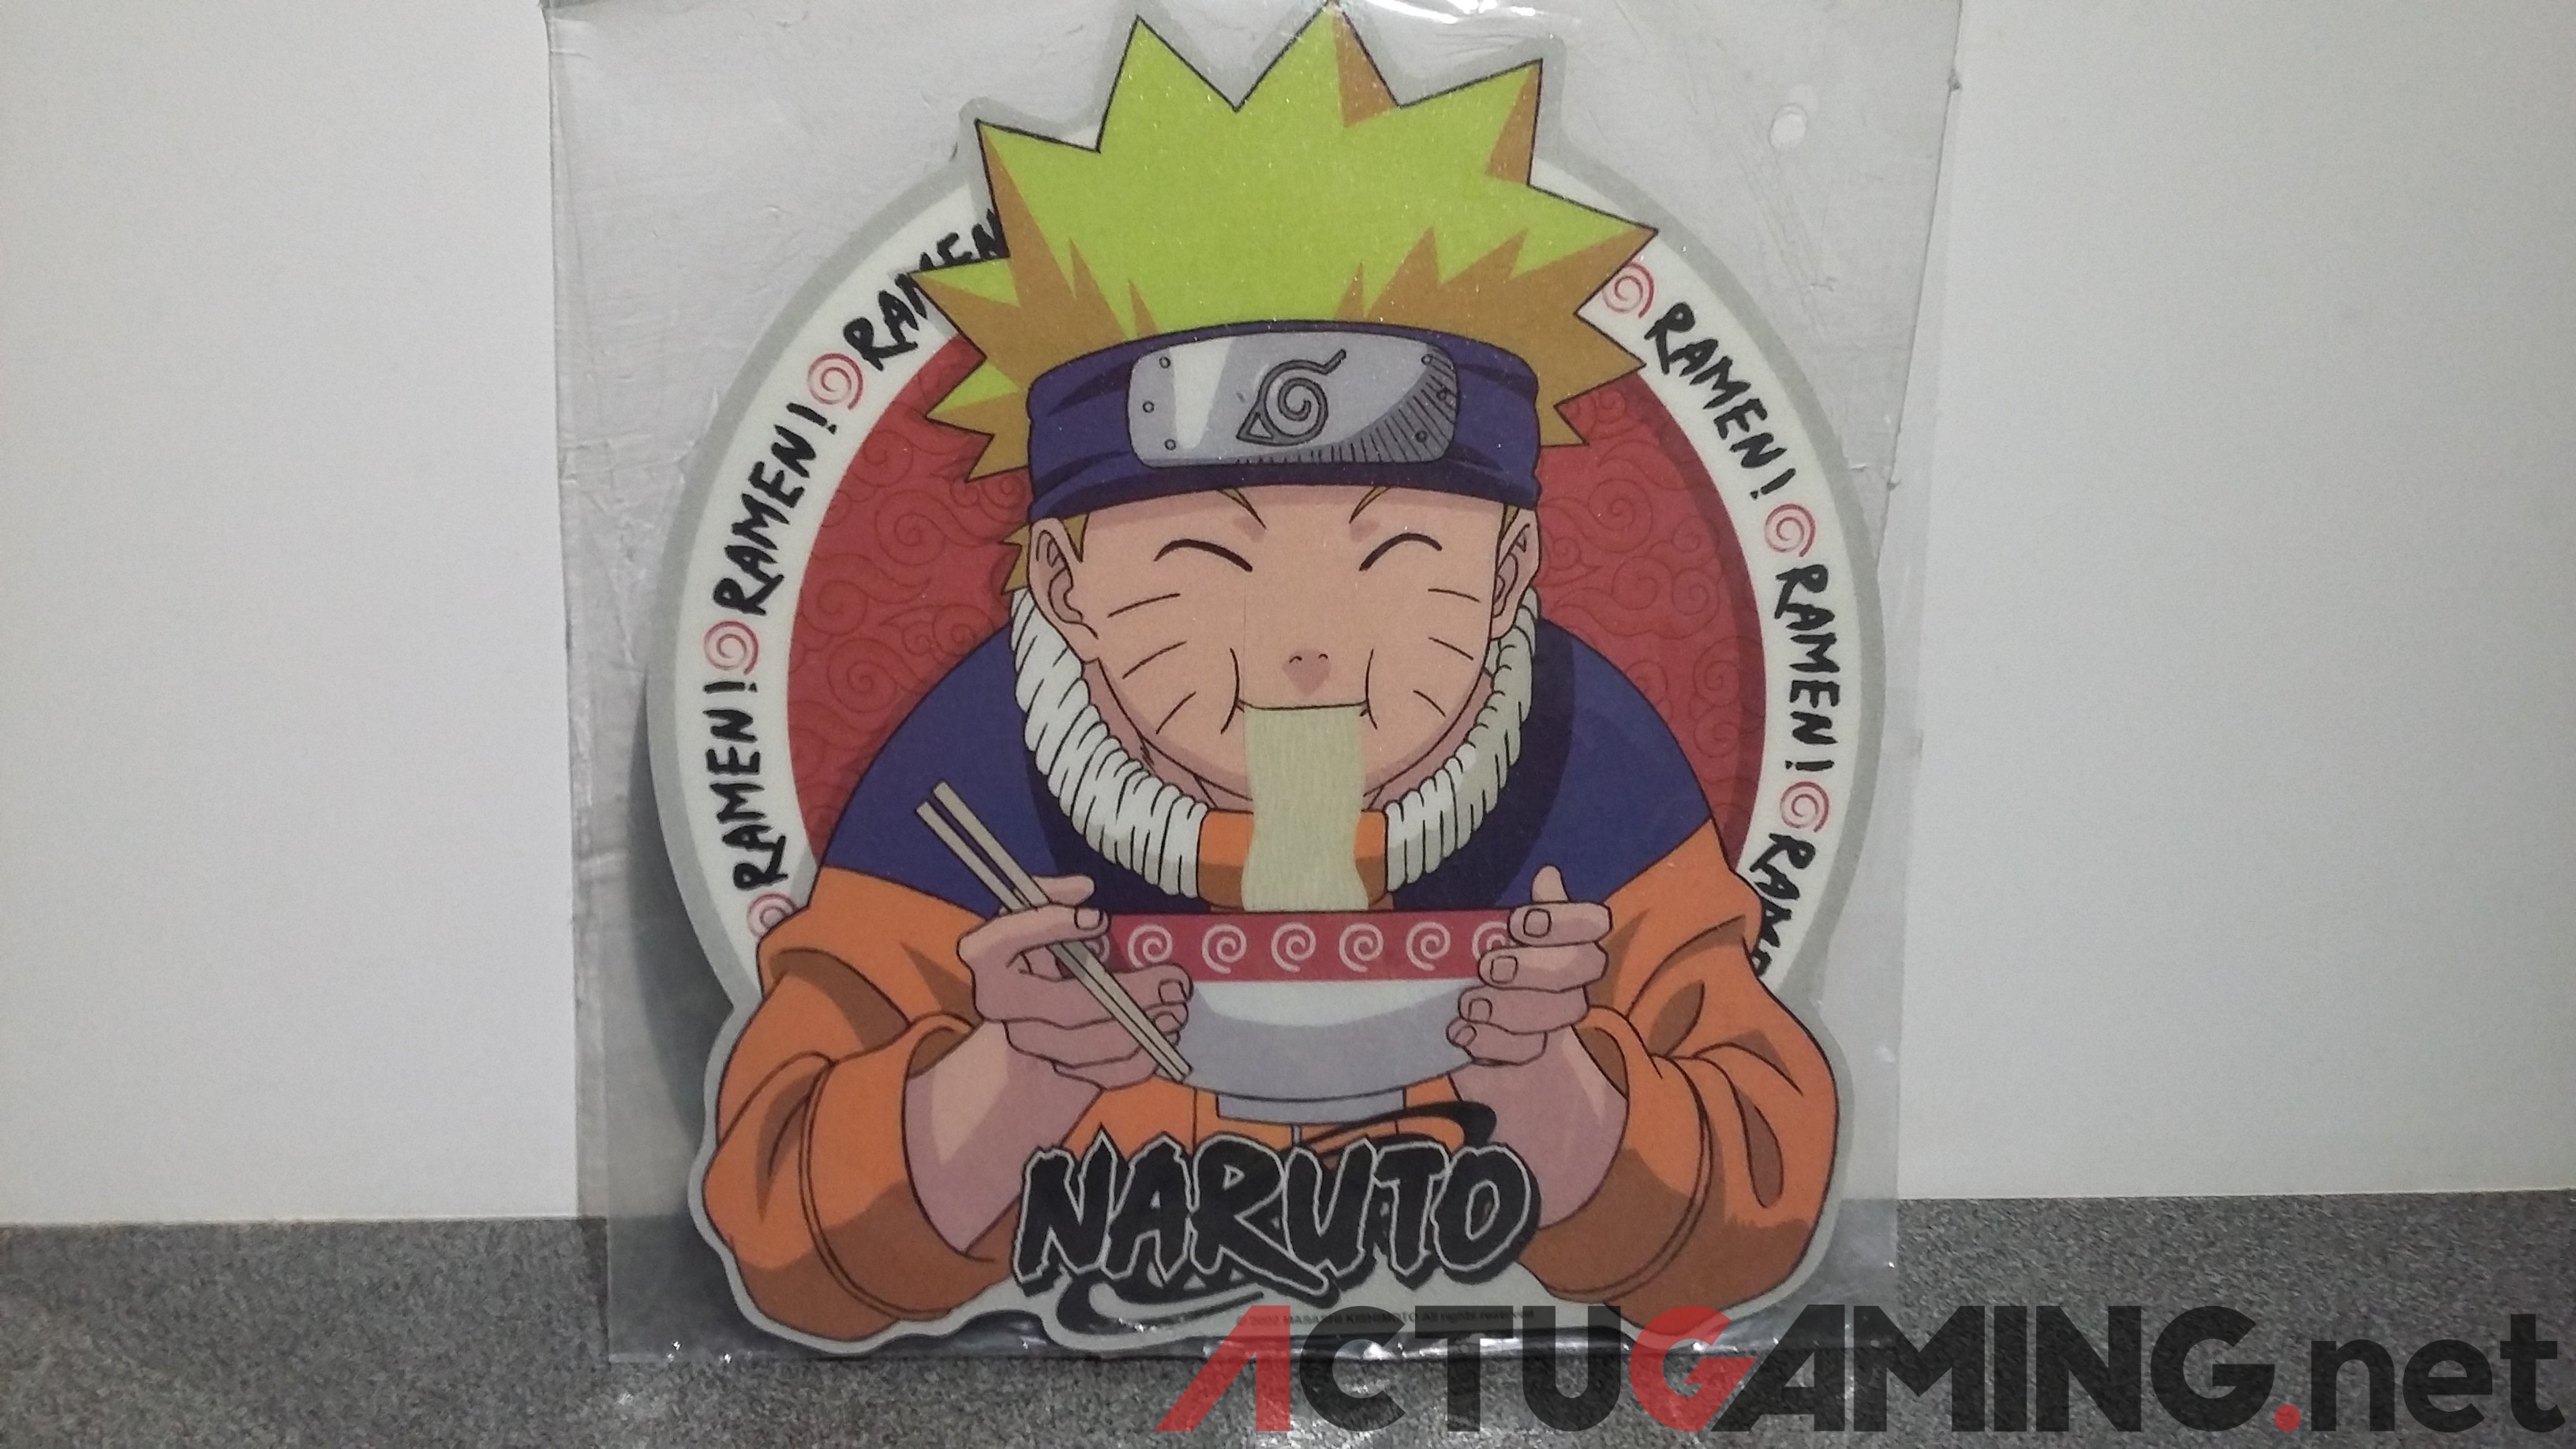 Naruto storm 4 lots tournoi (3)